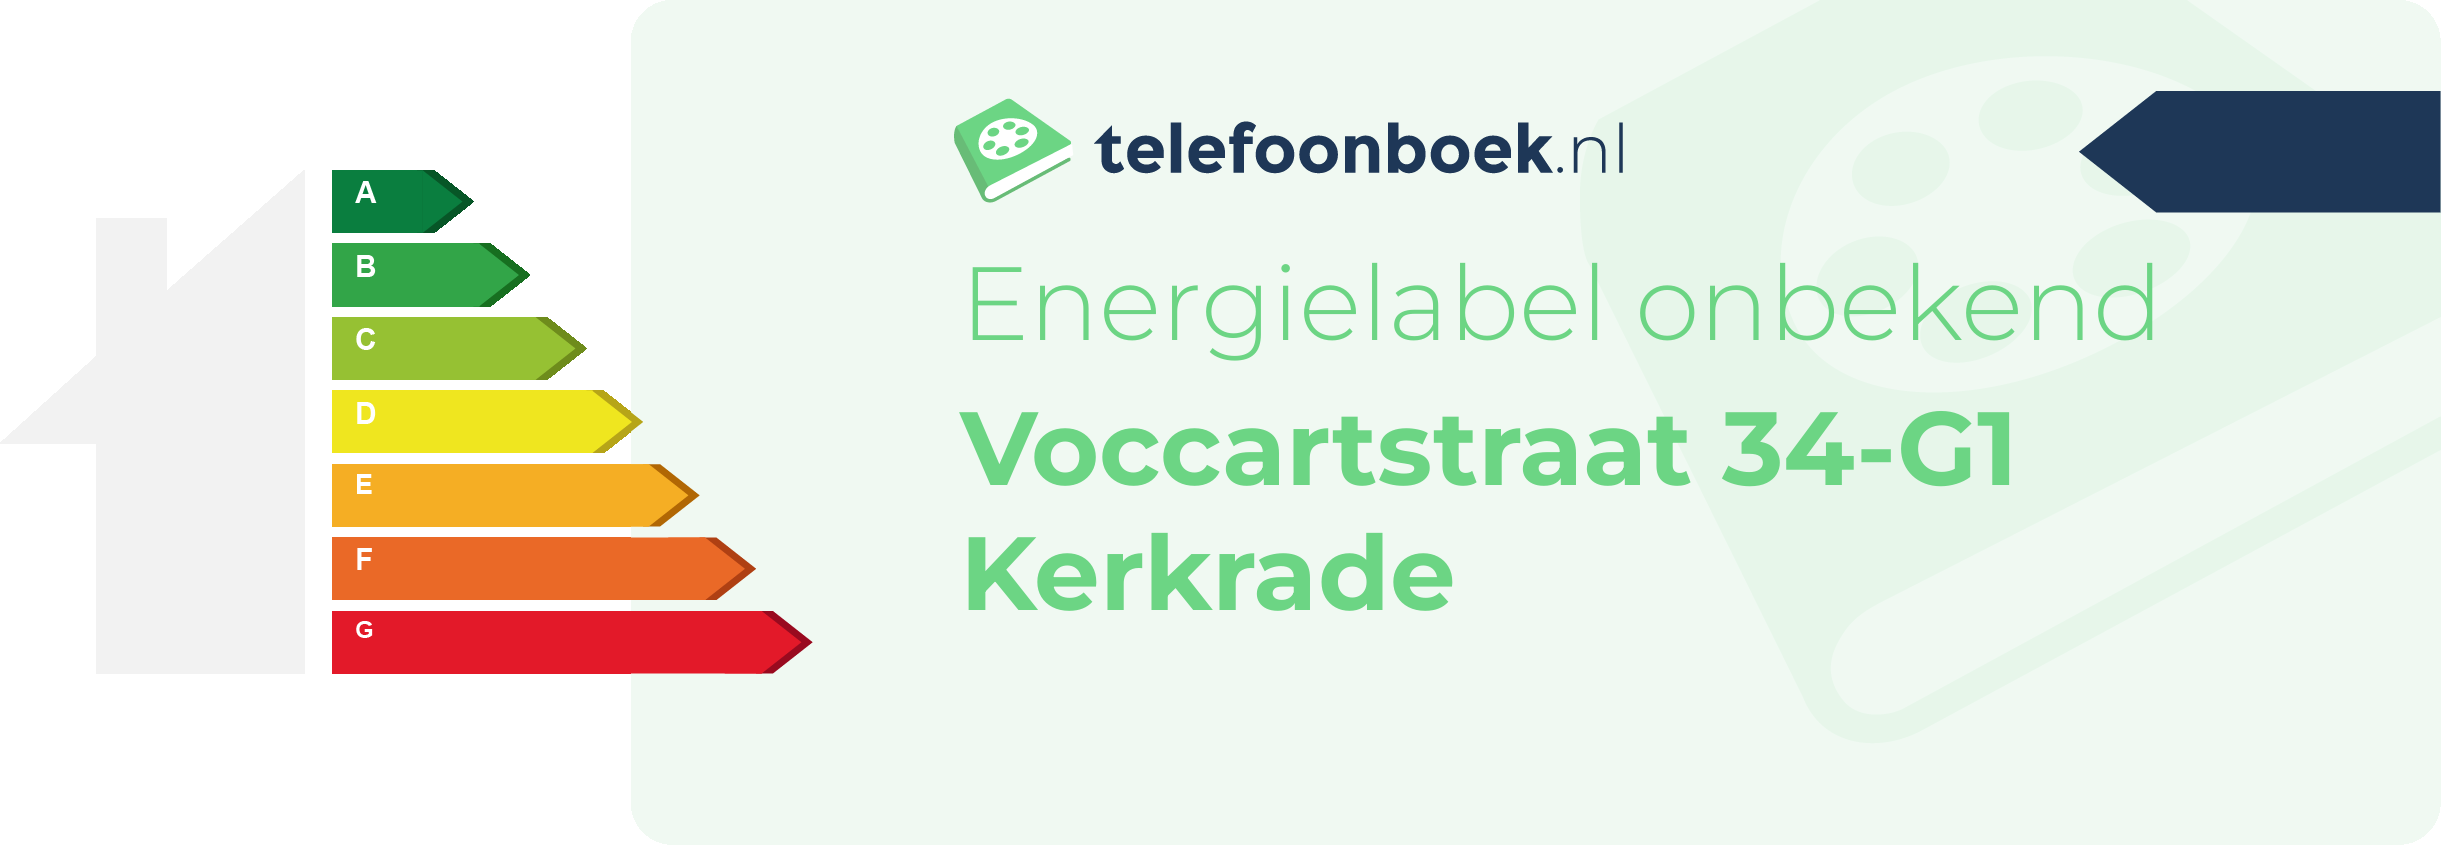 Energielabel Voccartstraat 34-G1 Kerkrade